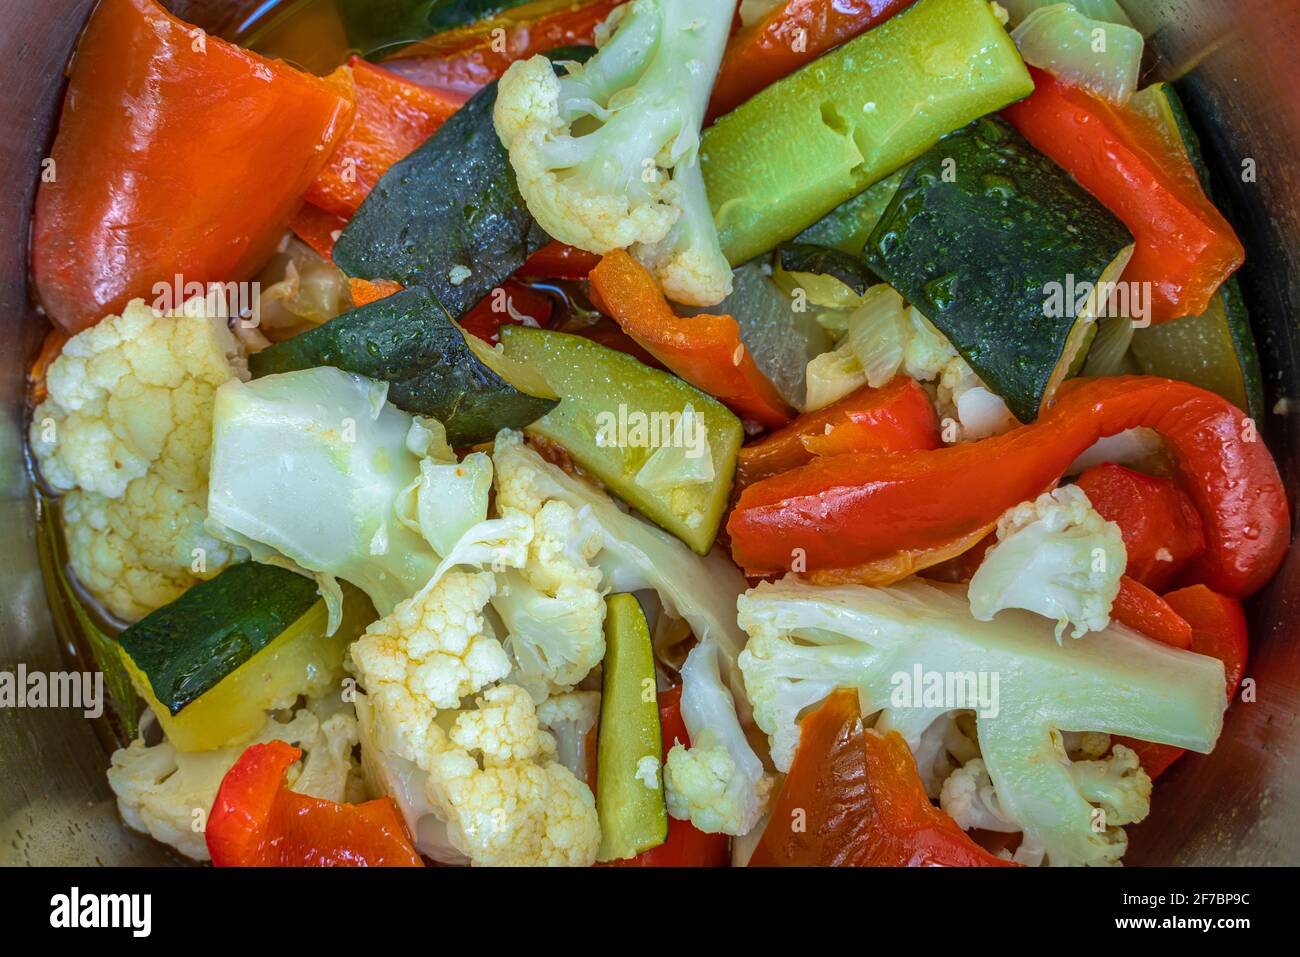 Insalata mista di verdure del giardino con cavolfiore, peperoni e zucchine. Mangiare cibo sano. Abruzzo, Italia, Europa Foto Stock